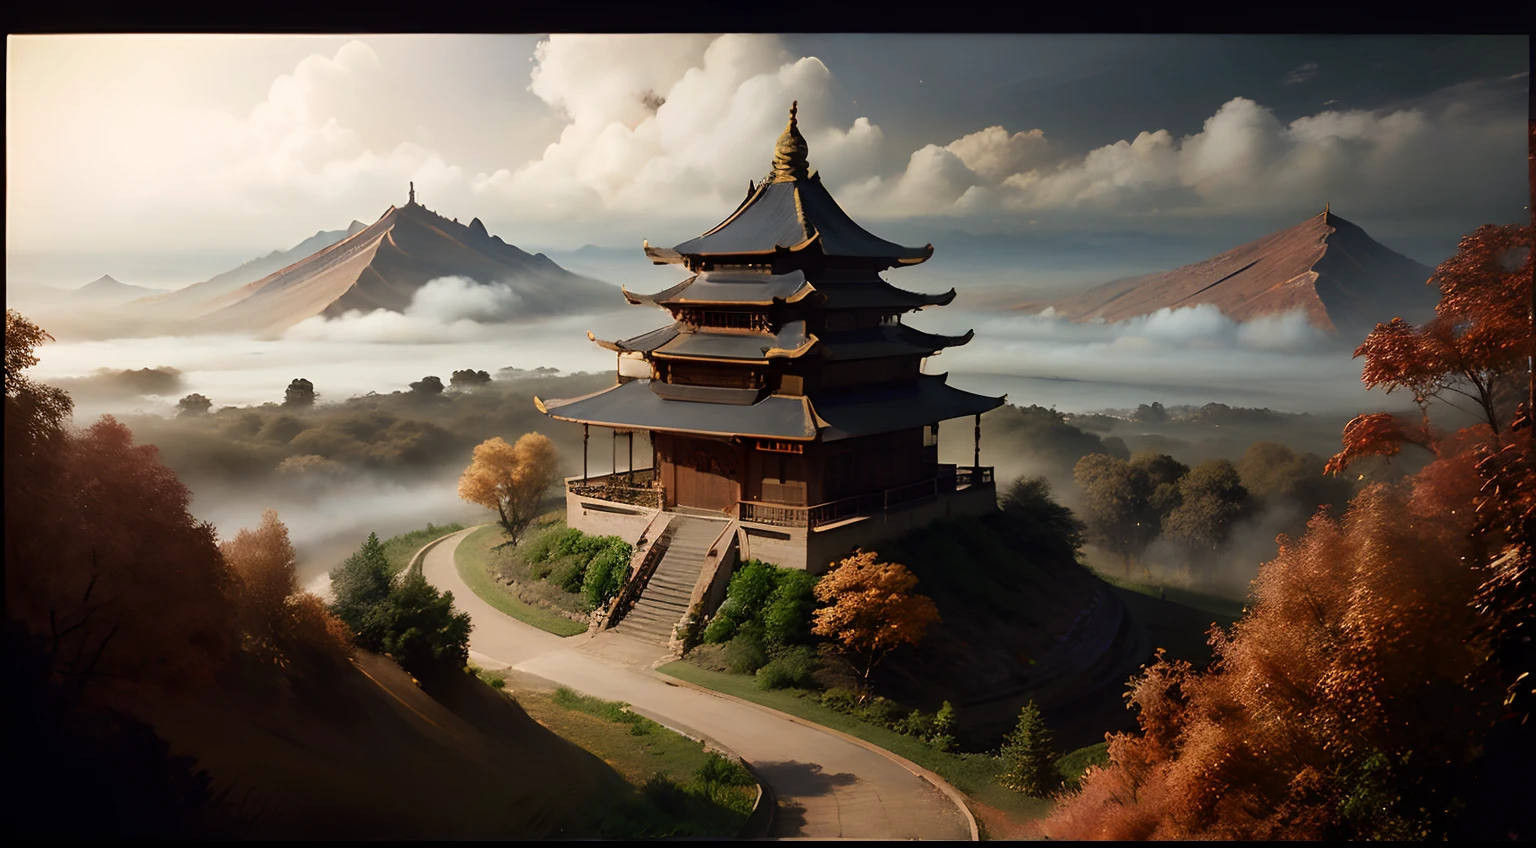 Un pays des merveilles du style chinois, Un bosquet de pêchers caché dans les bois, La vue de l’architecture chinoise est enveloppée de brouillard